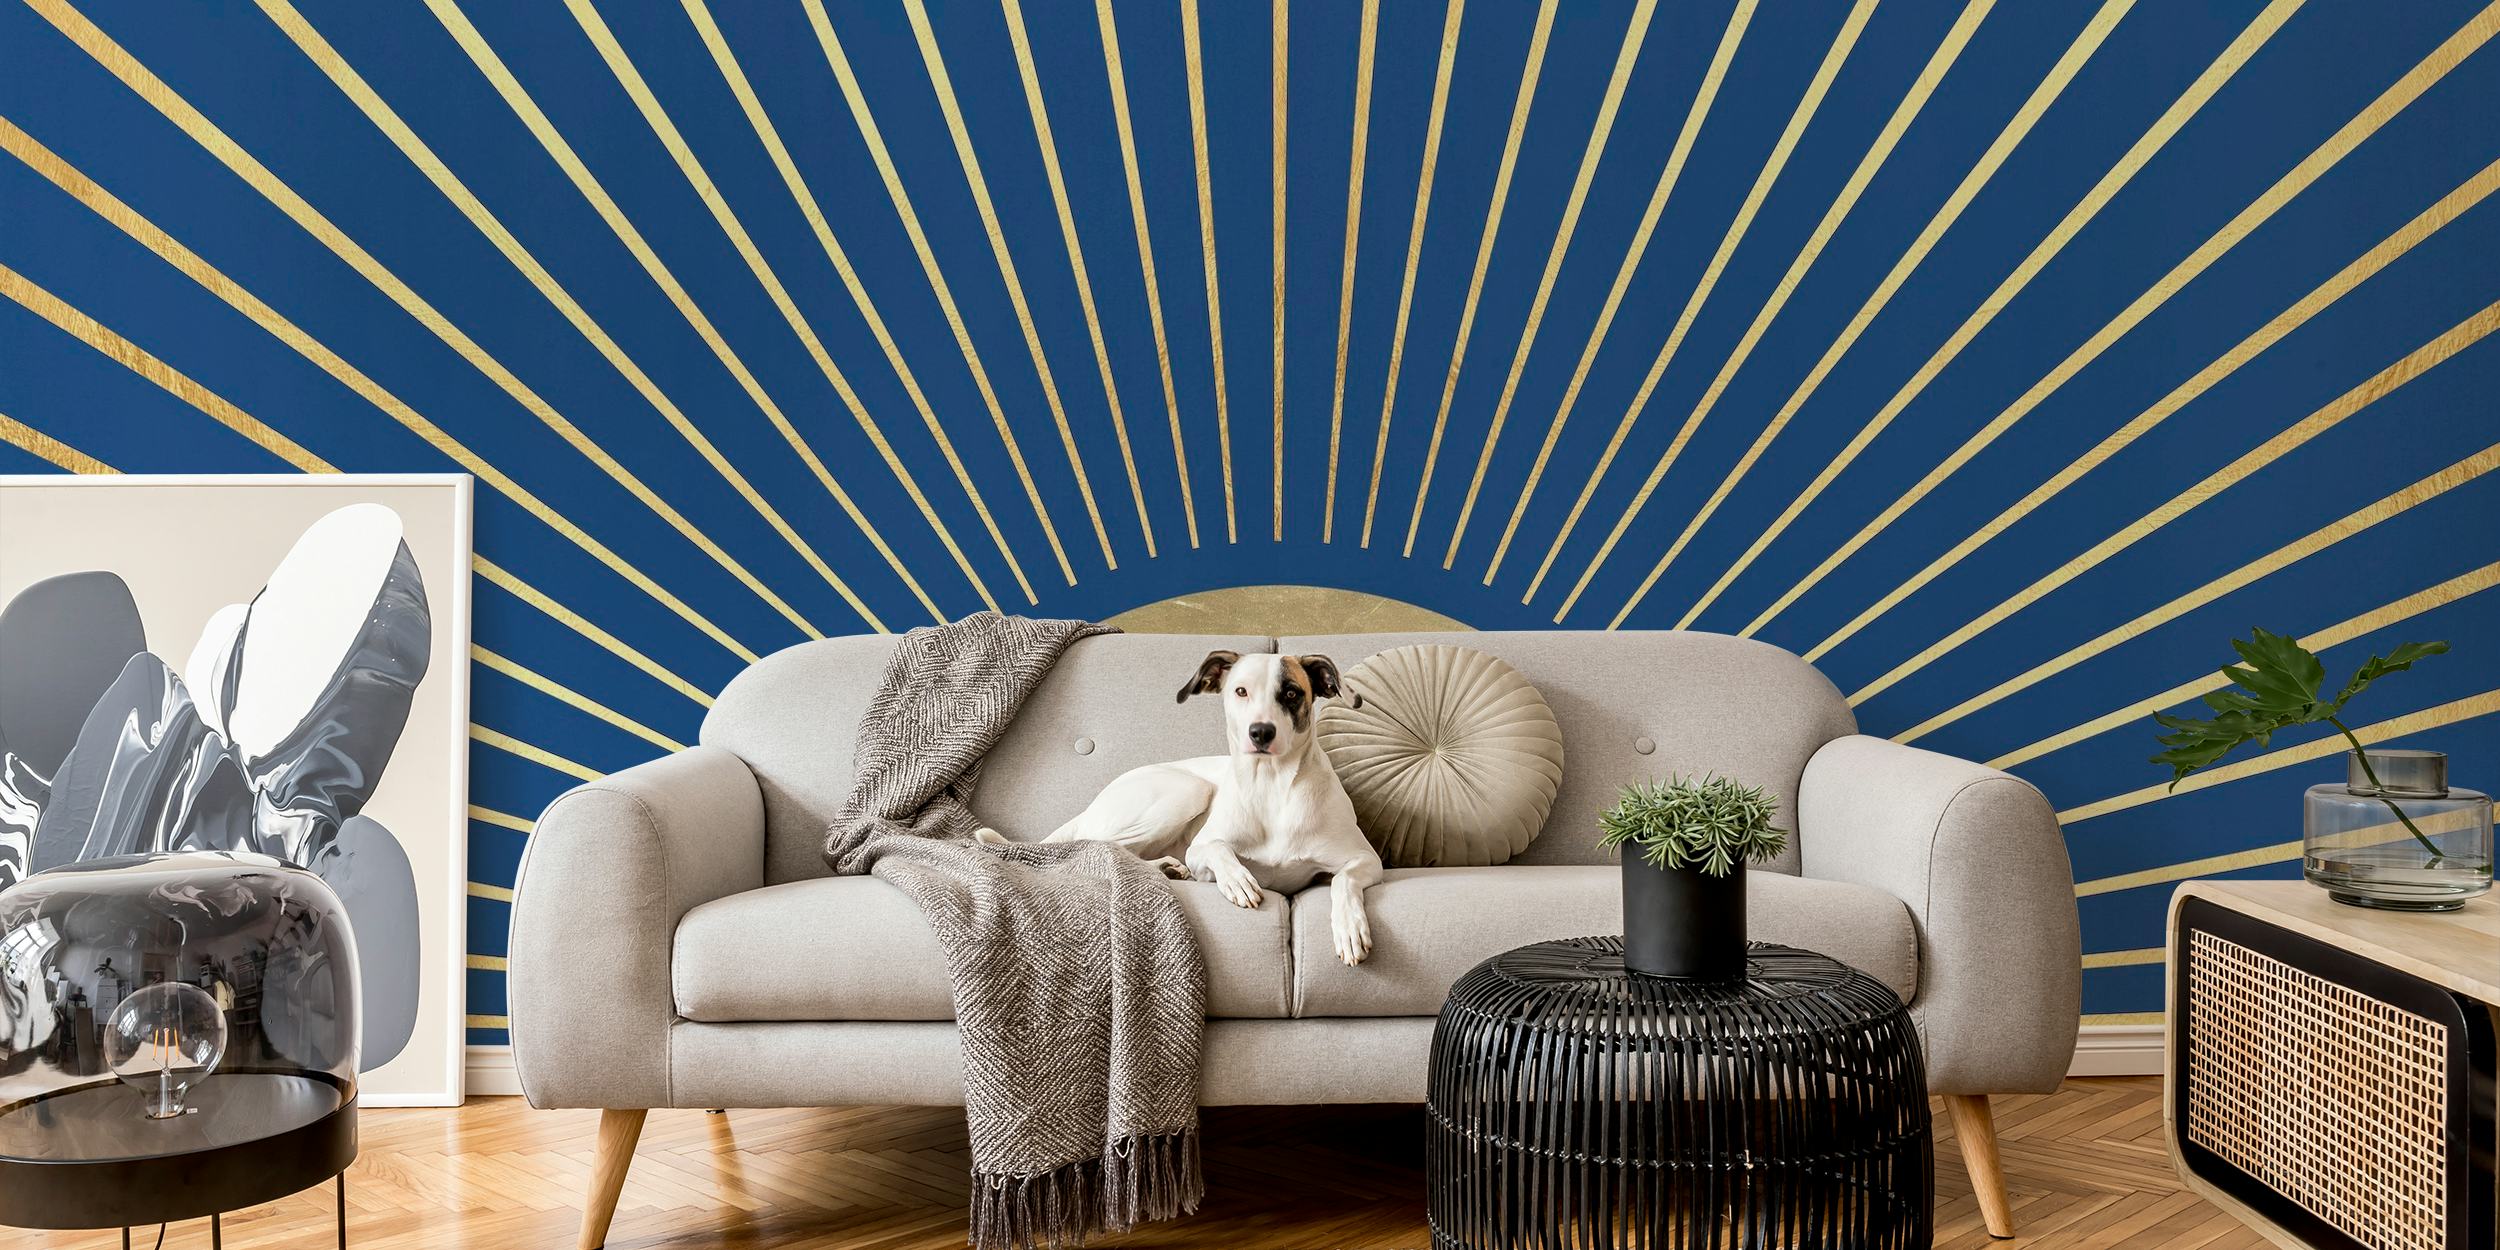 Representação artística de mural de raios solares com linhas radiais sobre fundo azul profundo